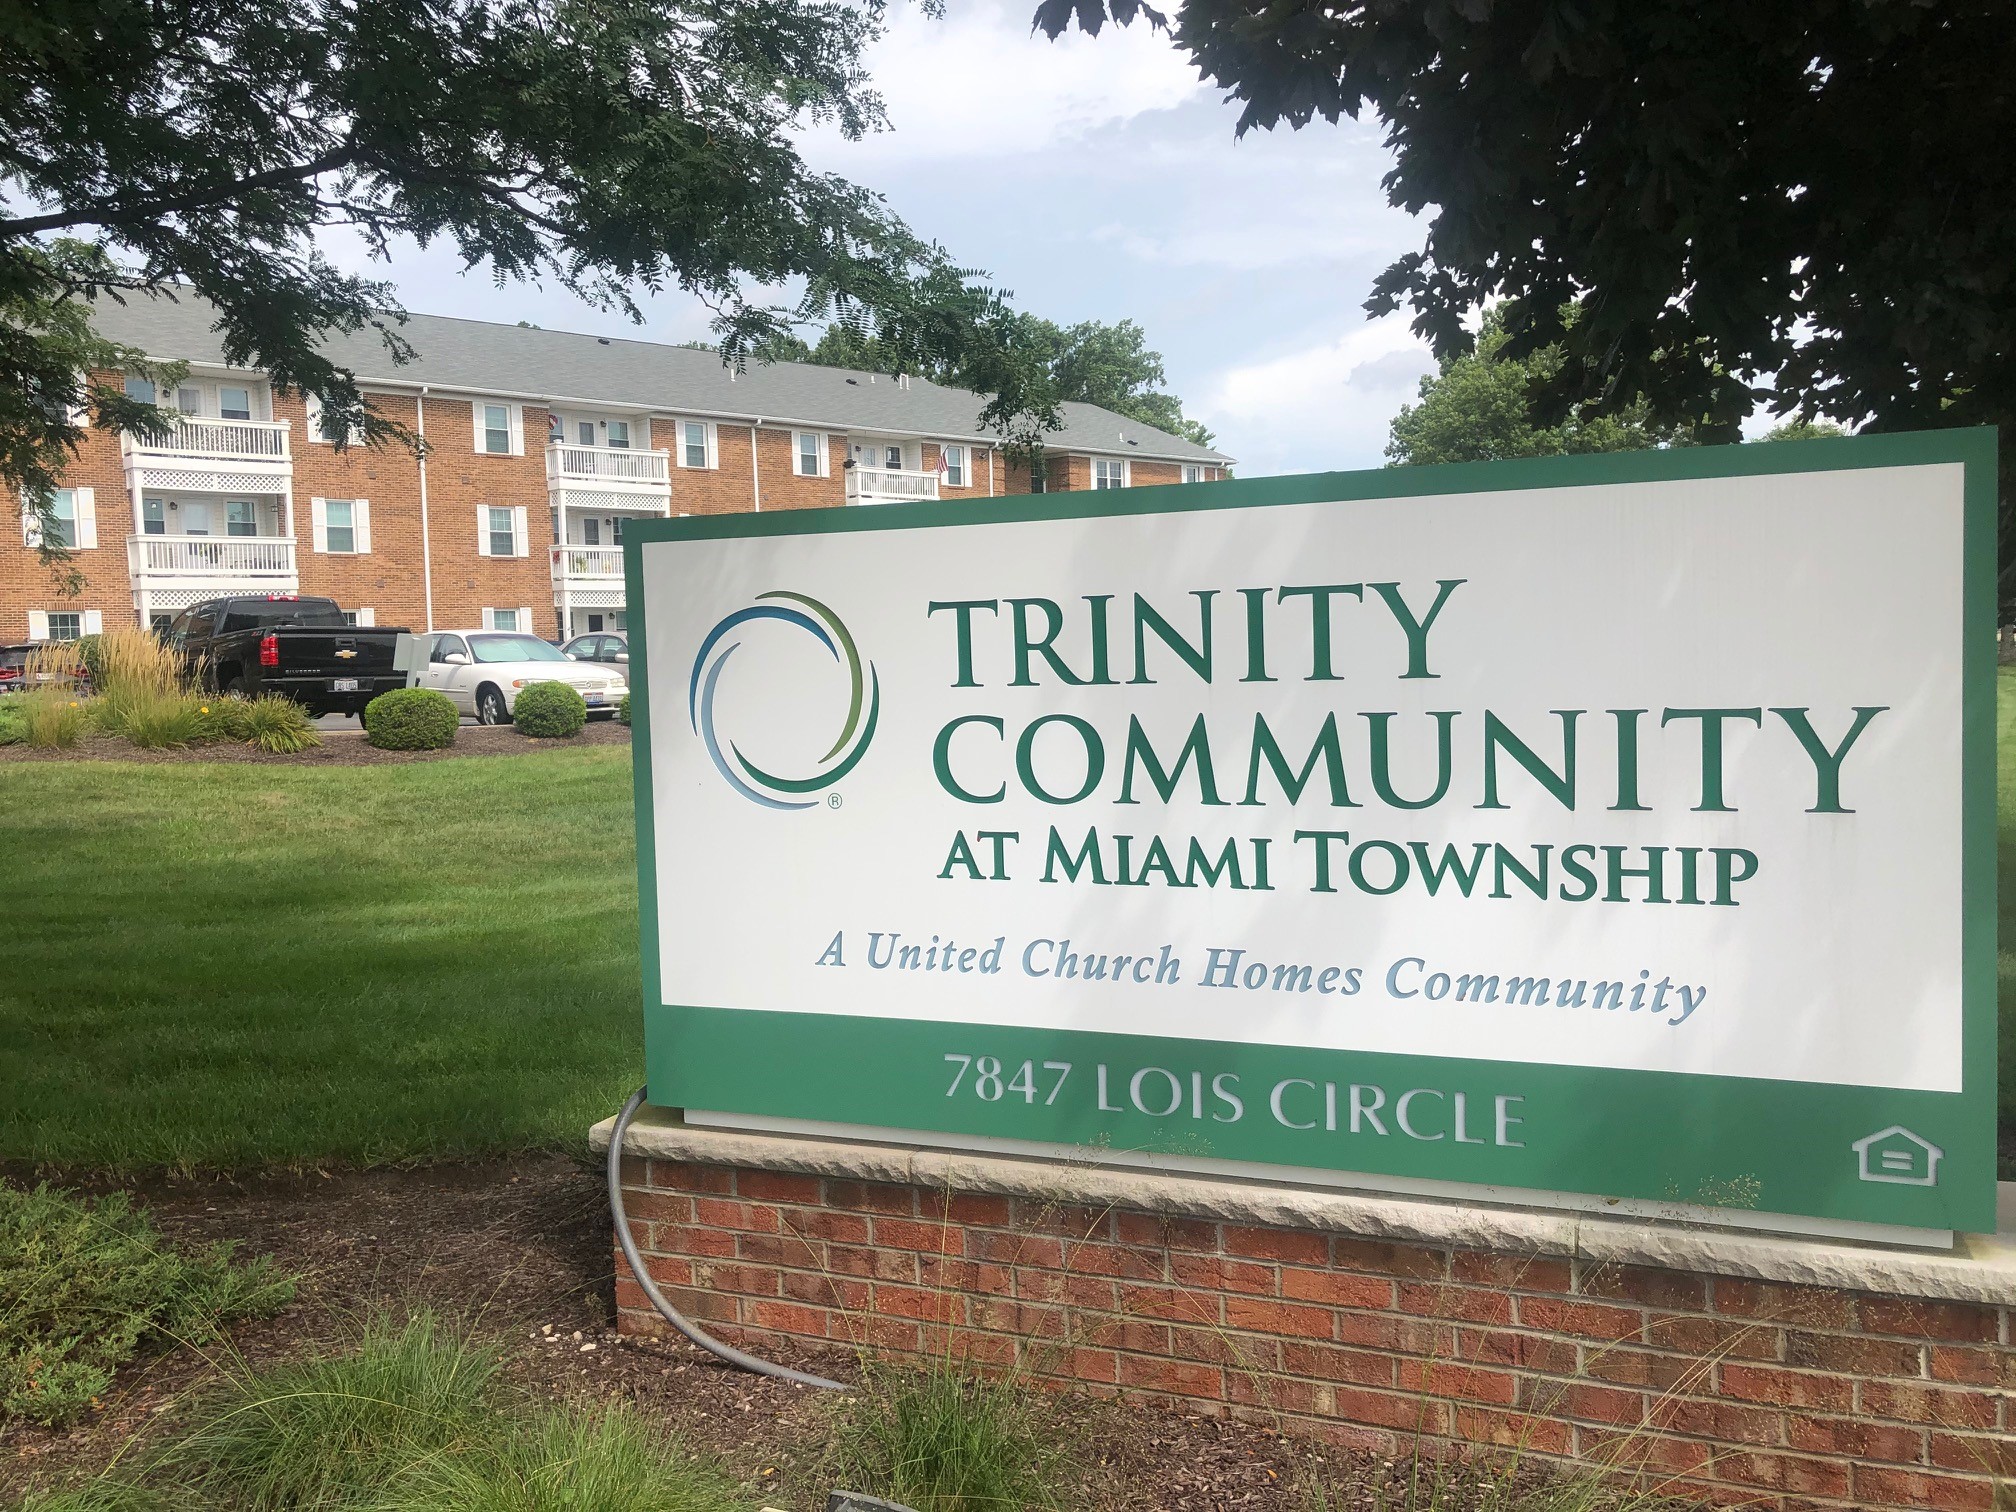 Trinity Community at Miami Township image